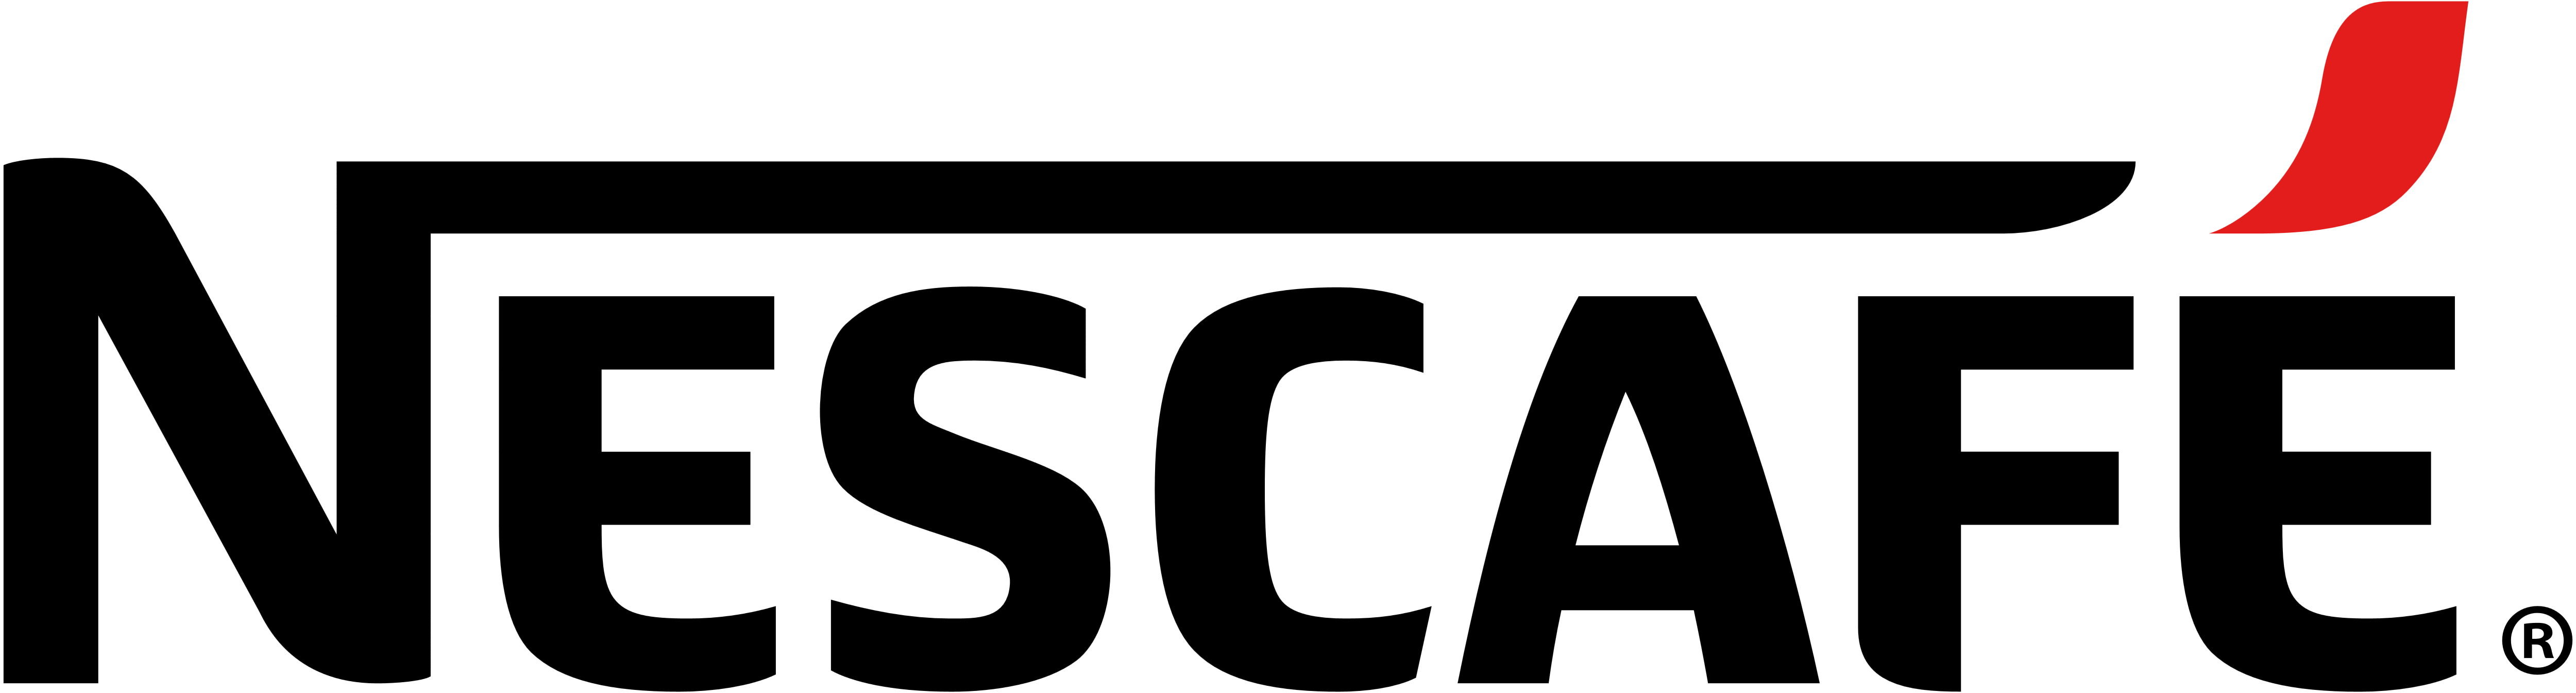 Nescafe Brand Logo